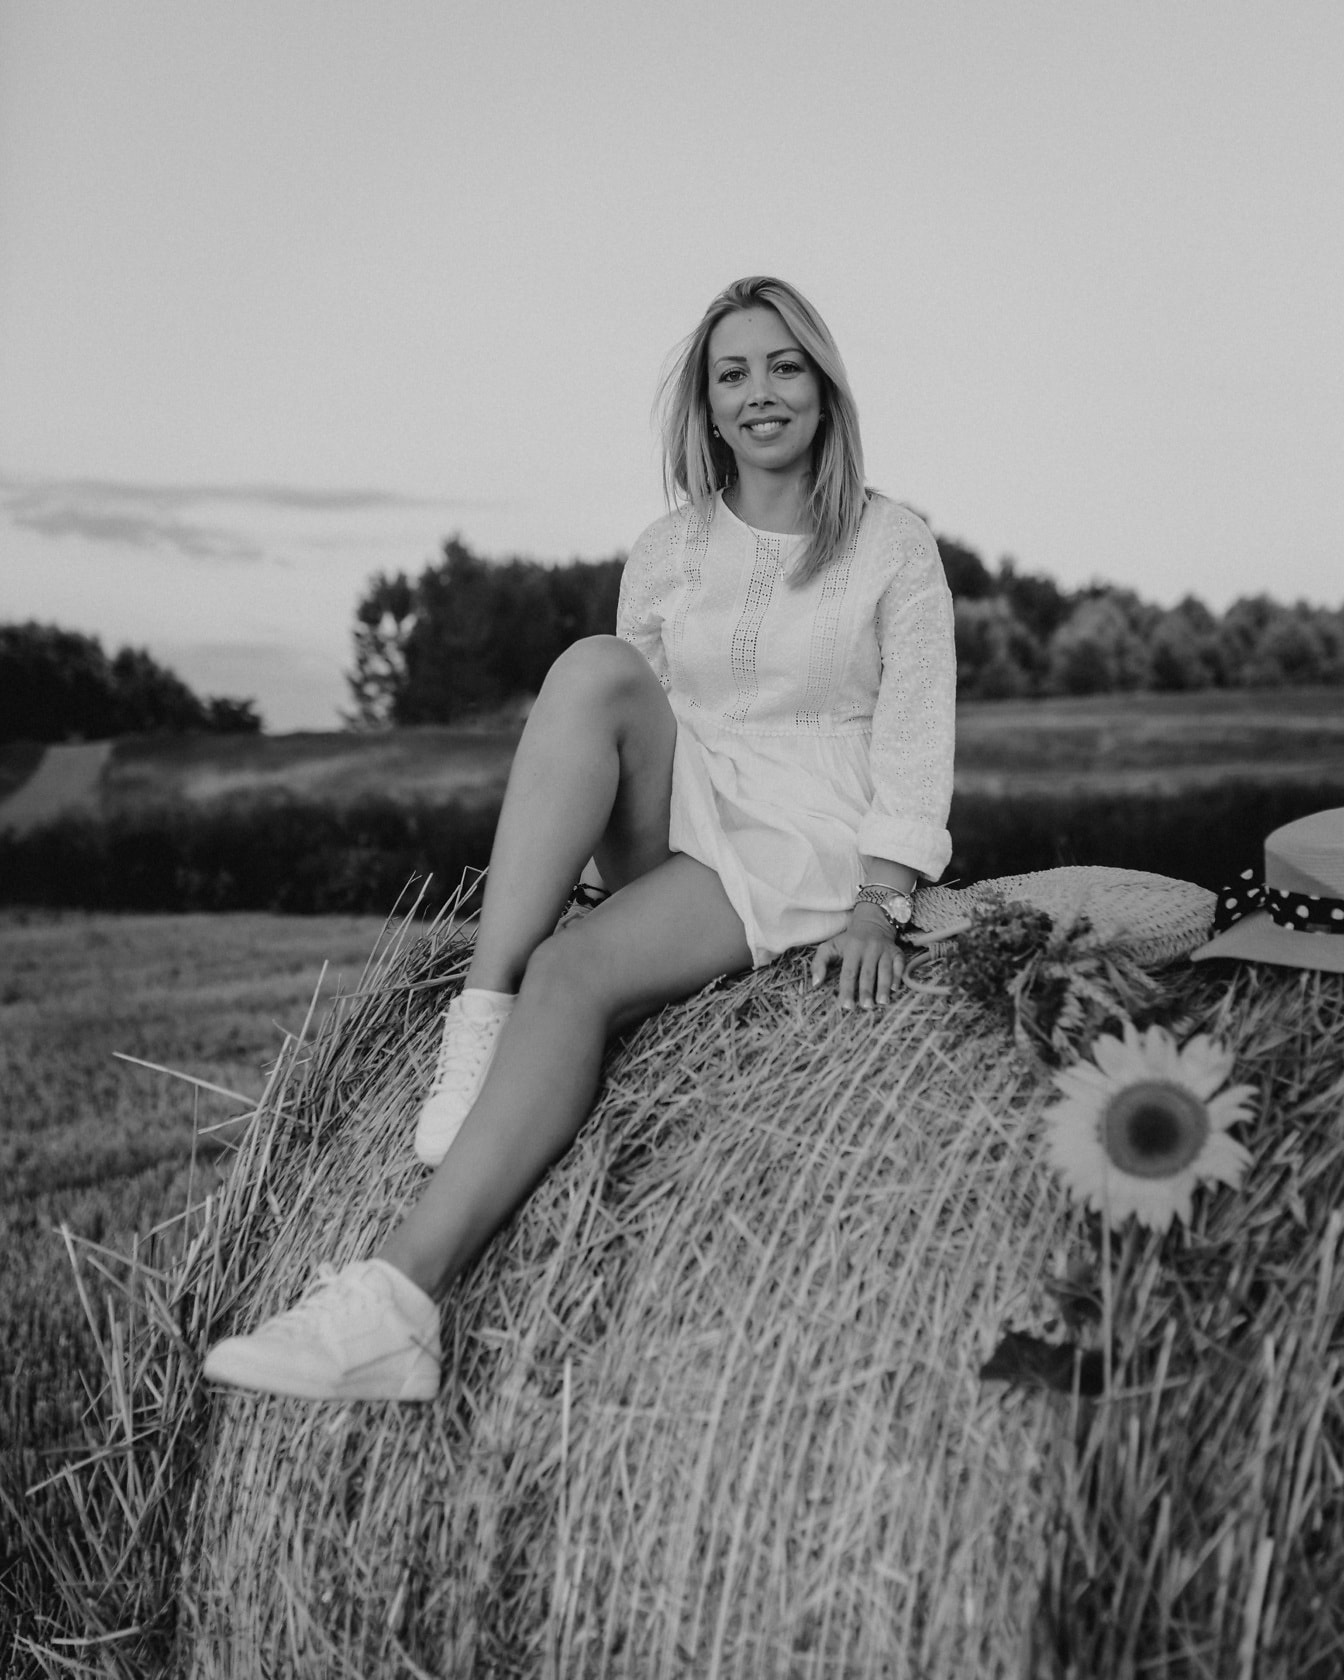 Adorable blonde assise sur une botte de foin rôle monochrome photographie